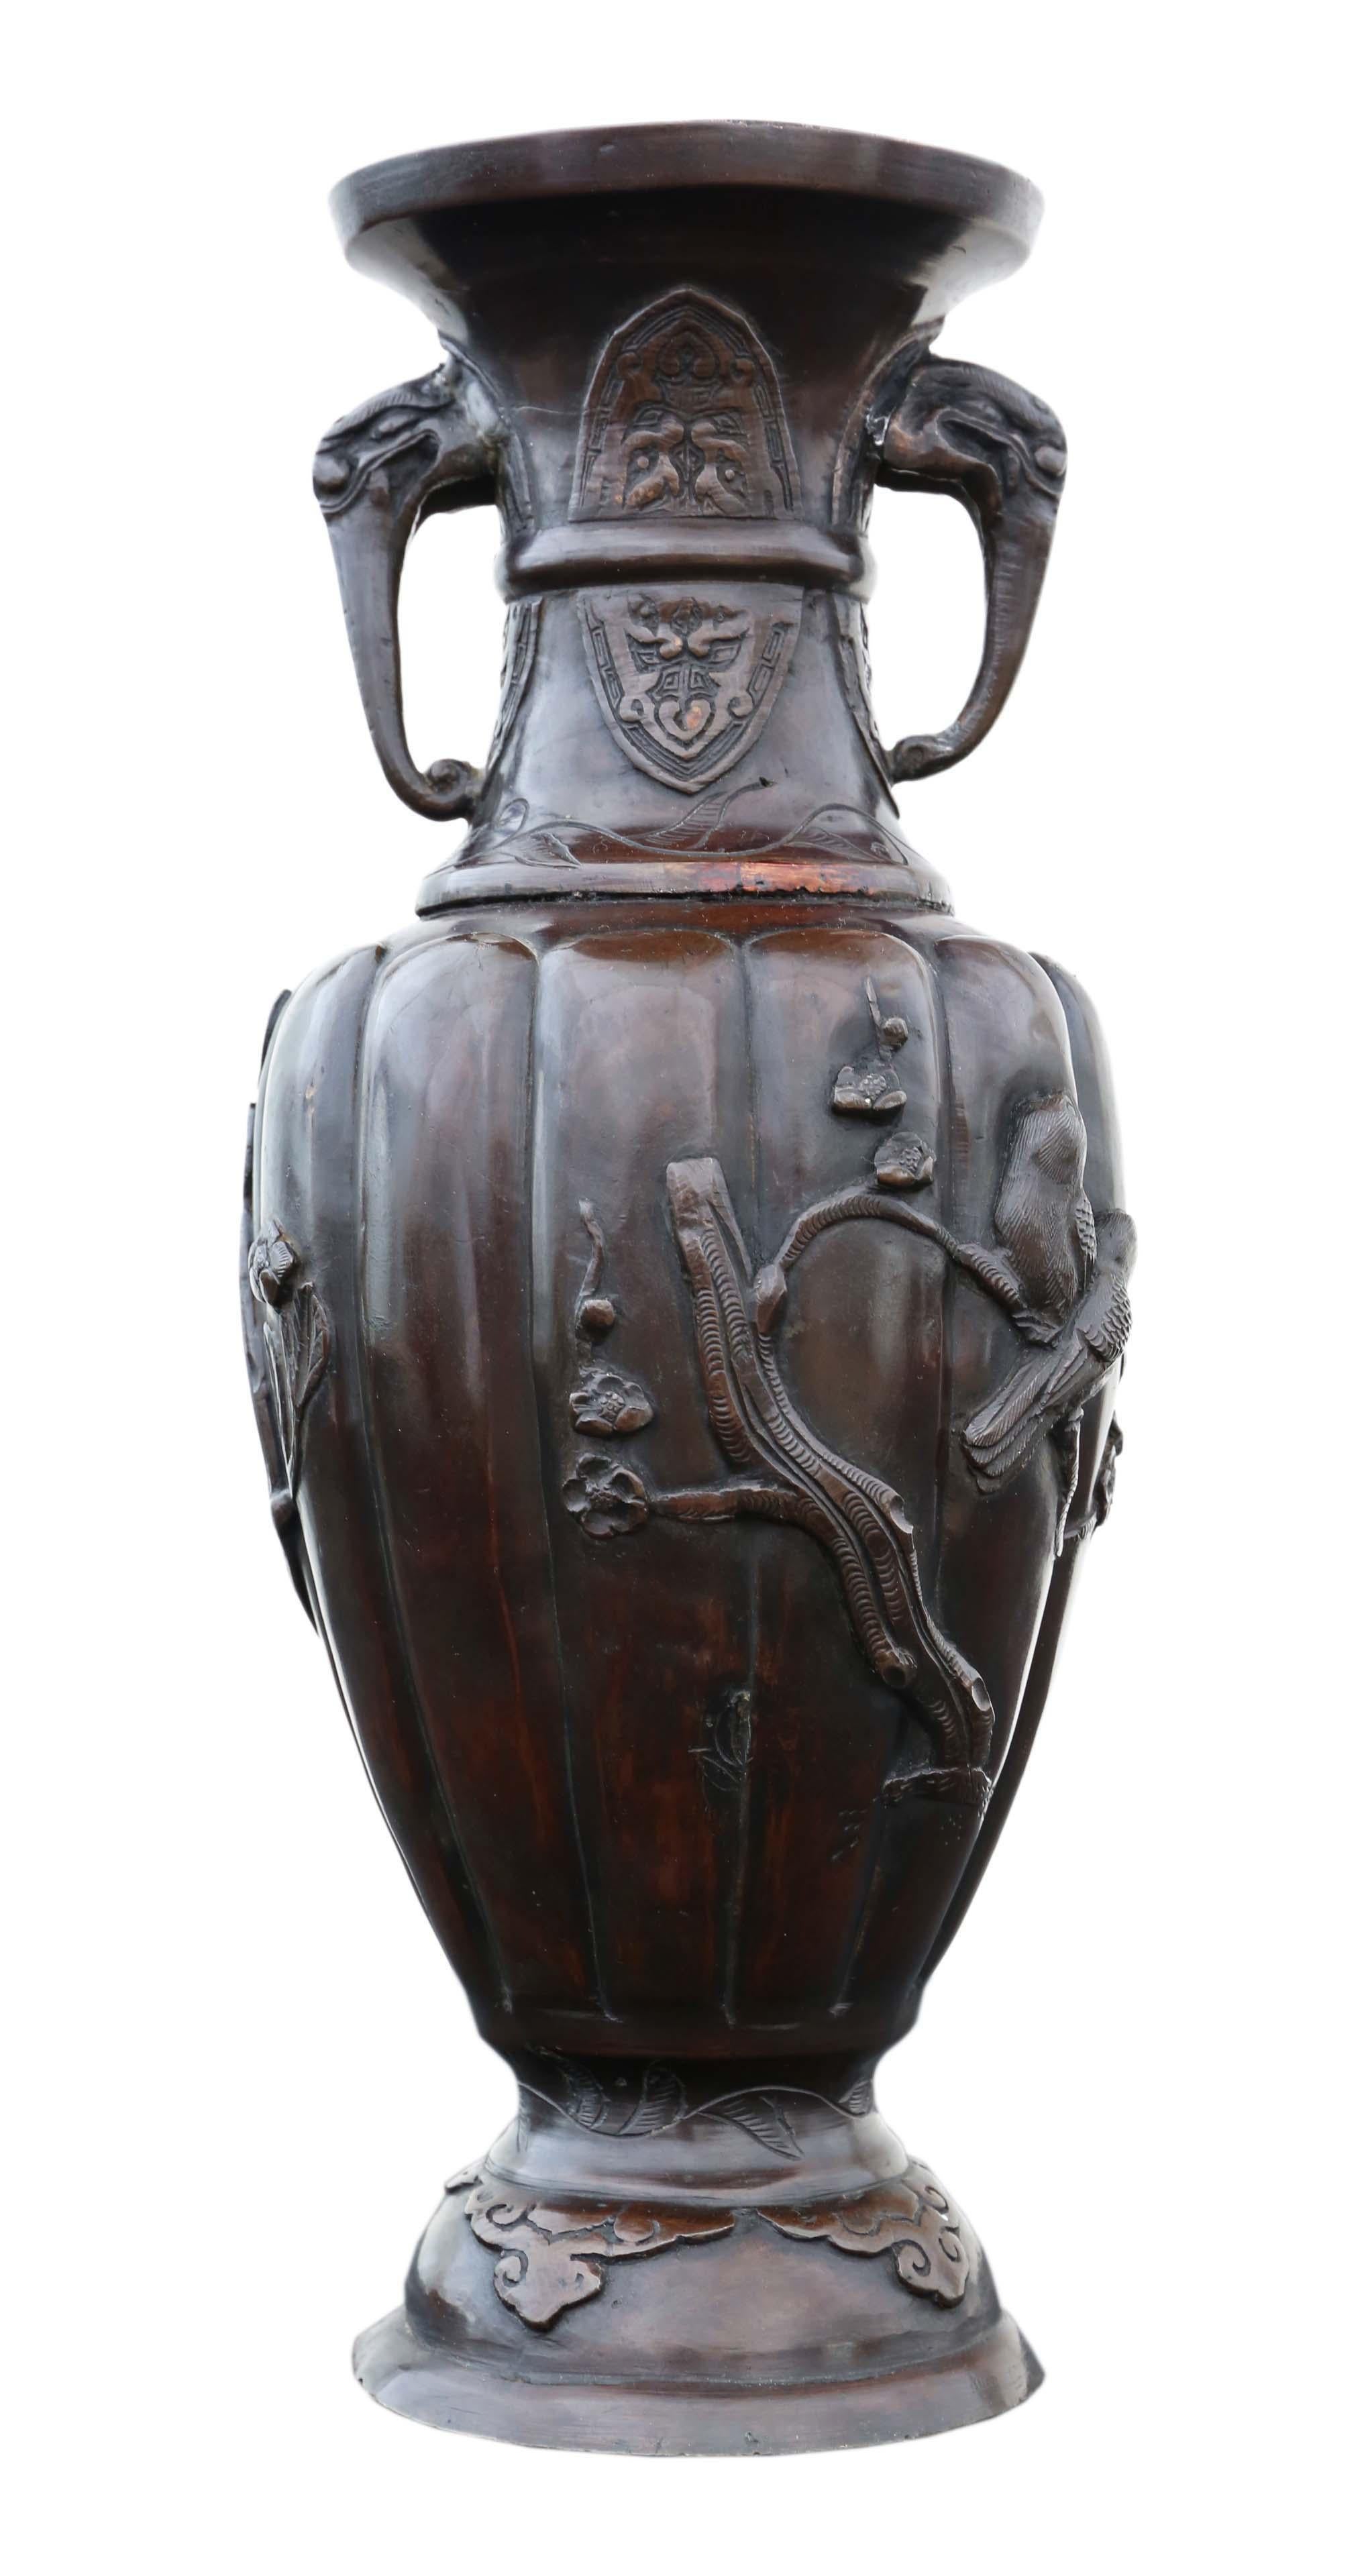 Vase japonais en bronze de la période Meiji à décor d'oiseaux et de feuillages et anses d'éléphants, vers 1900.
Il serait magnifique au bon endroit. La meilleure couleur et la meilleure patine.
Dimensions totales maximales : 34 cm de haut x 14 cm